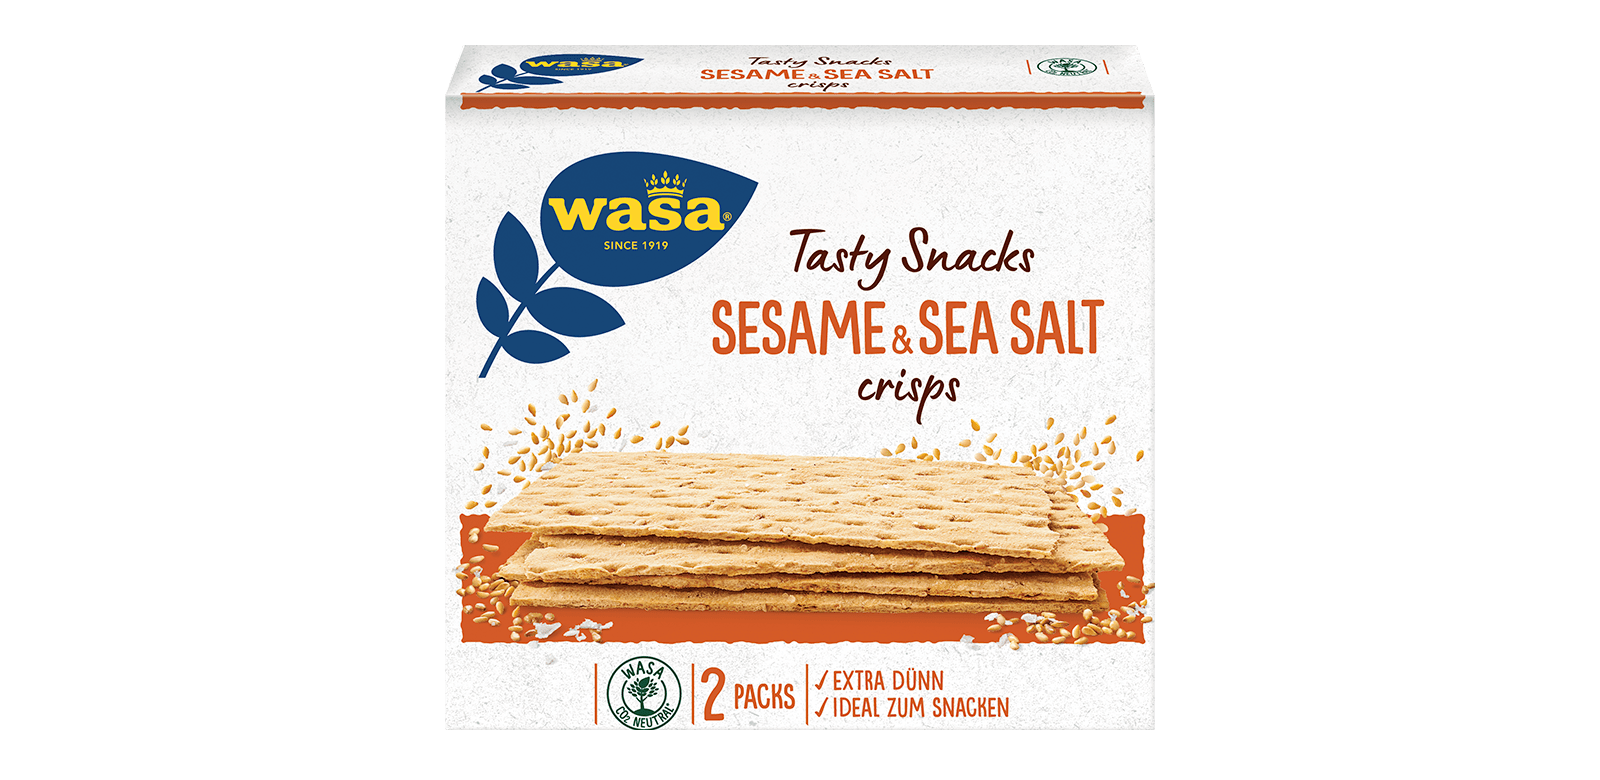 Tasty Snacks Sesame & Sea Salt